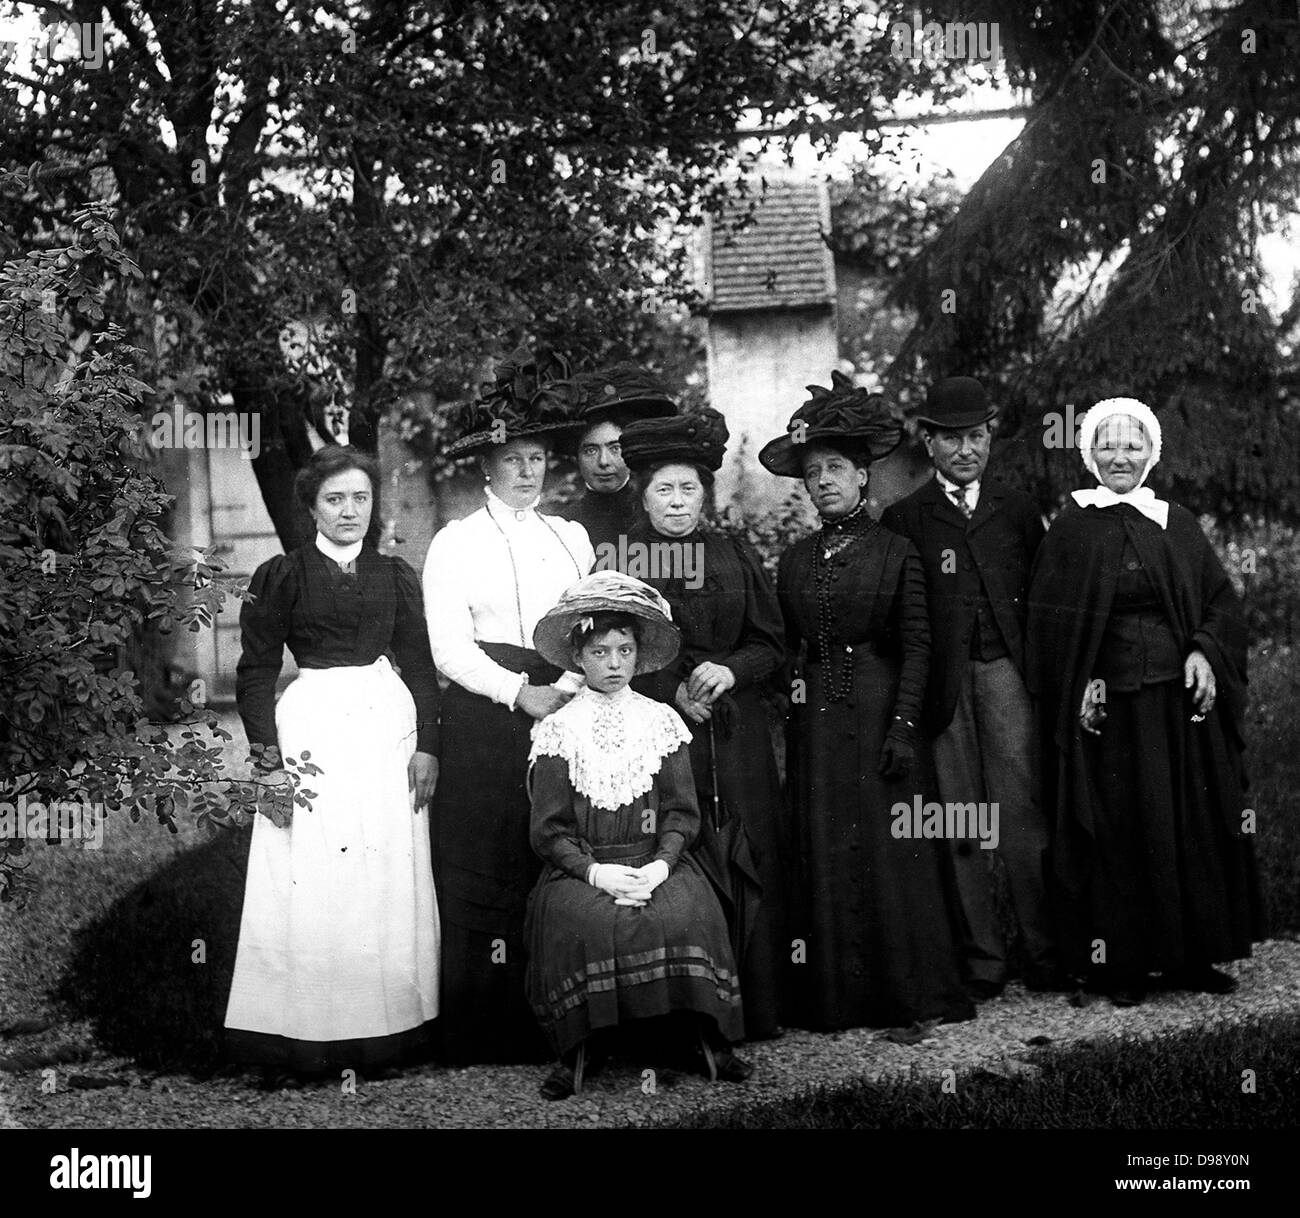 Les villageois français photographié vers 1911 Banque D'Images